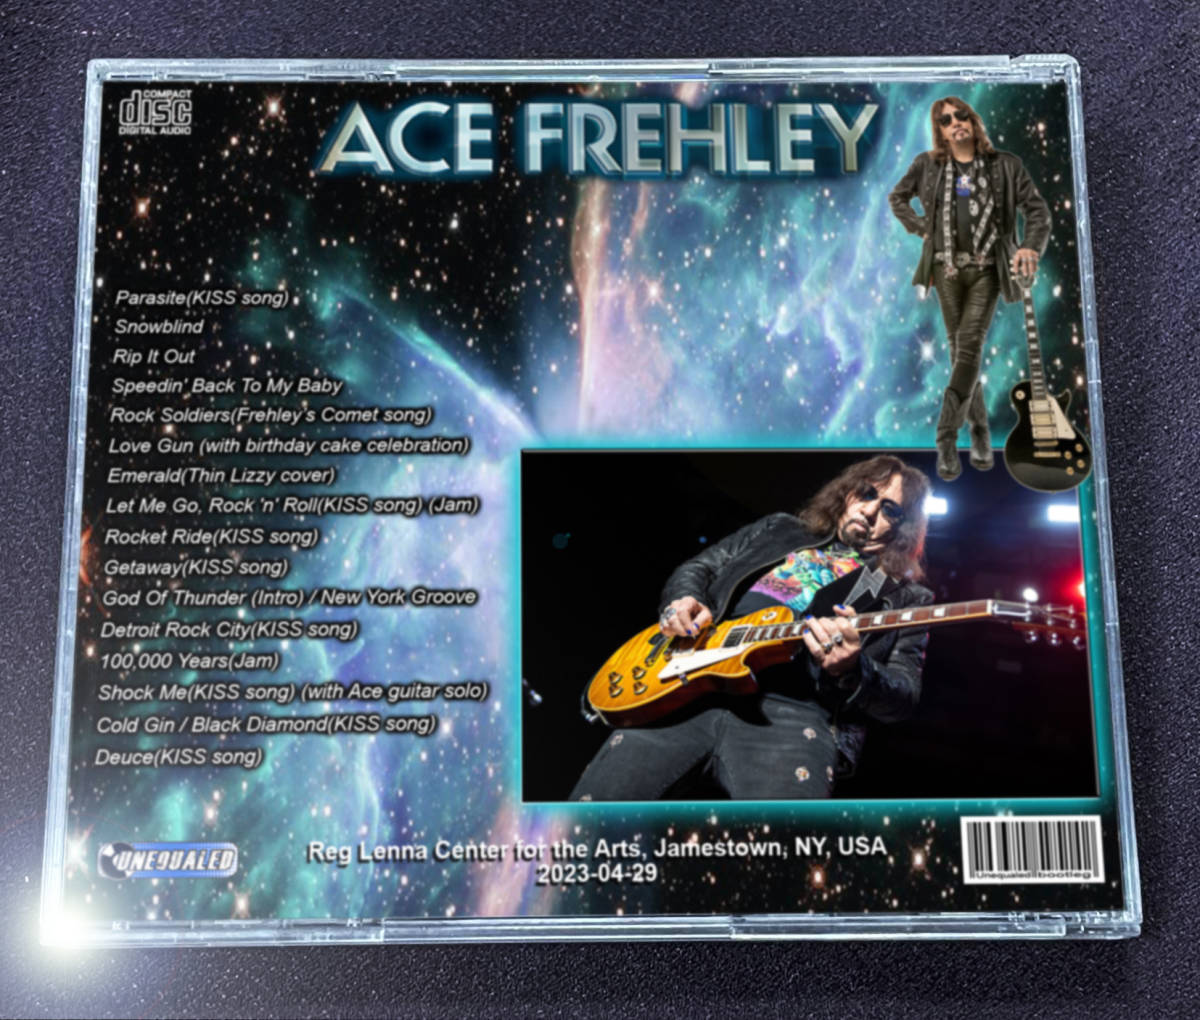 Ace Frehley 2023-04-29 Reg Lenna Center 2CD_画像2